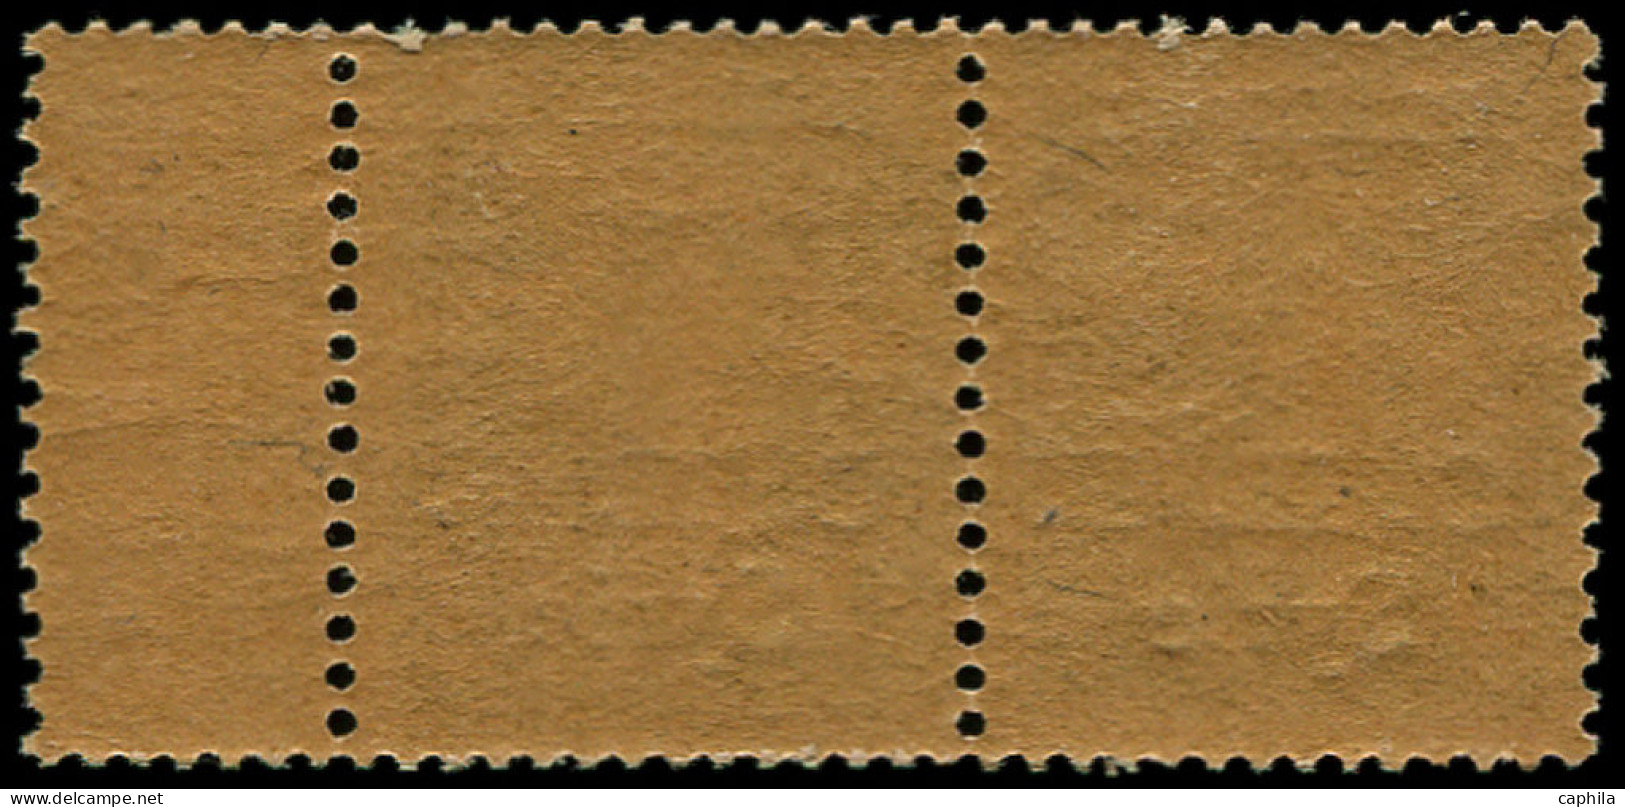 ** SYRIE - Poste - 35, Bande De 4 Surcharge à Cheval, "Piastre" En Haut, Bdf: 1p. S. 5c. Vert Semeuse - Unused Stamps